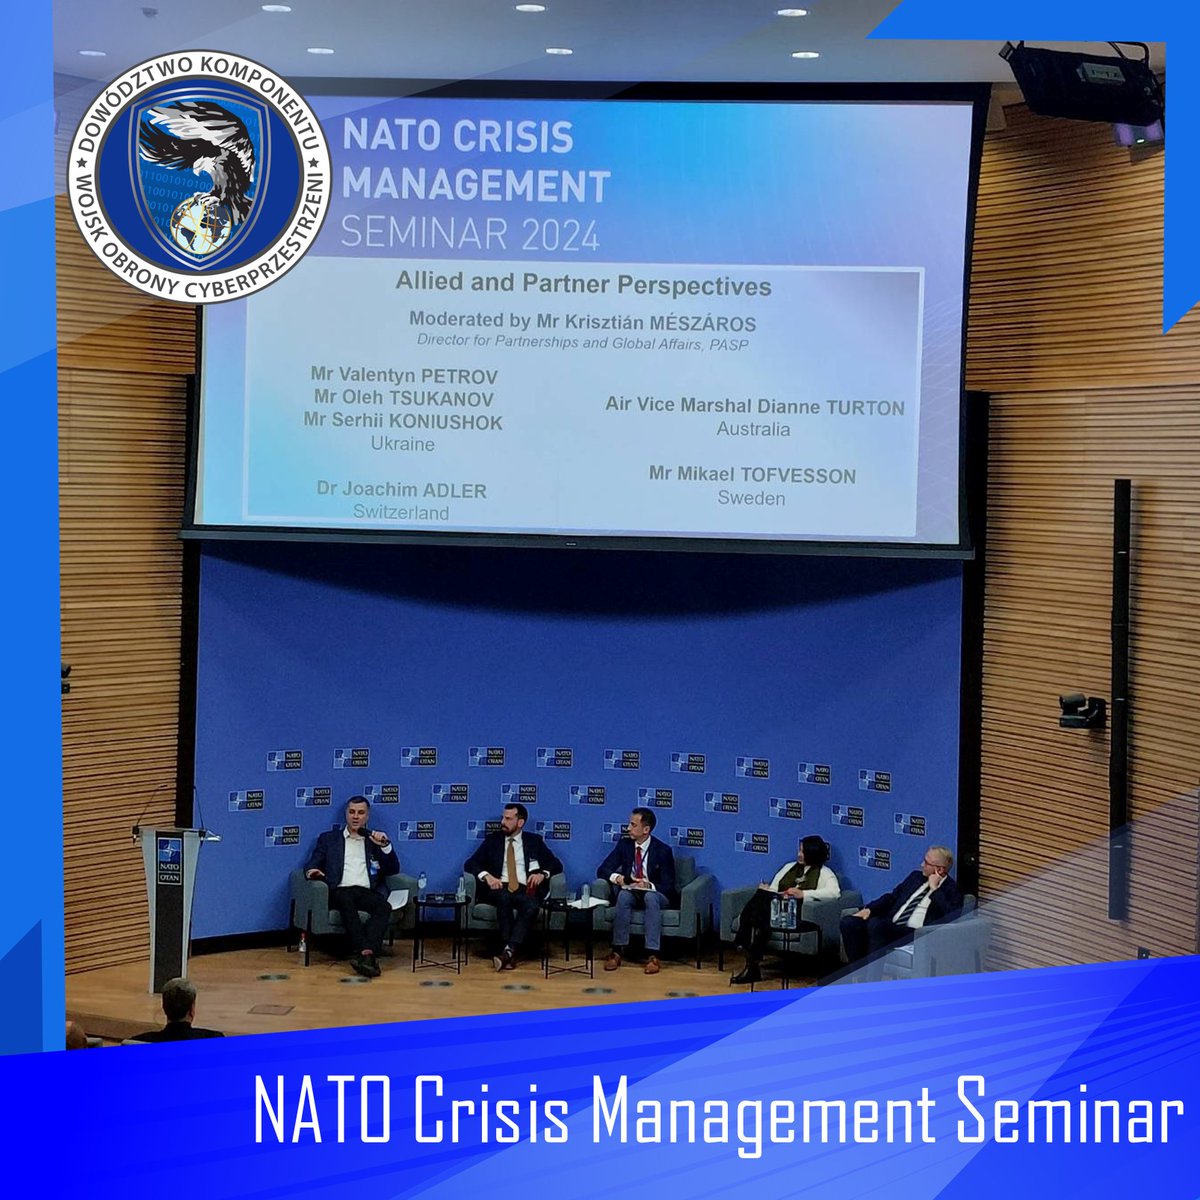 W Kwaterze Głównej #NATO w Brukseli odbyło się NATO Crisis Management Seminar. W wydarzeniu uczestniczył przedstawiciel @CyberWojska, który w ramach Sojuszu podzielił się doświadczeniami w zakresie przeciwdziałania zagrożeniom w cyberprzestrzeni.